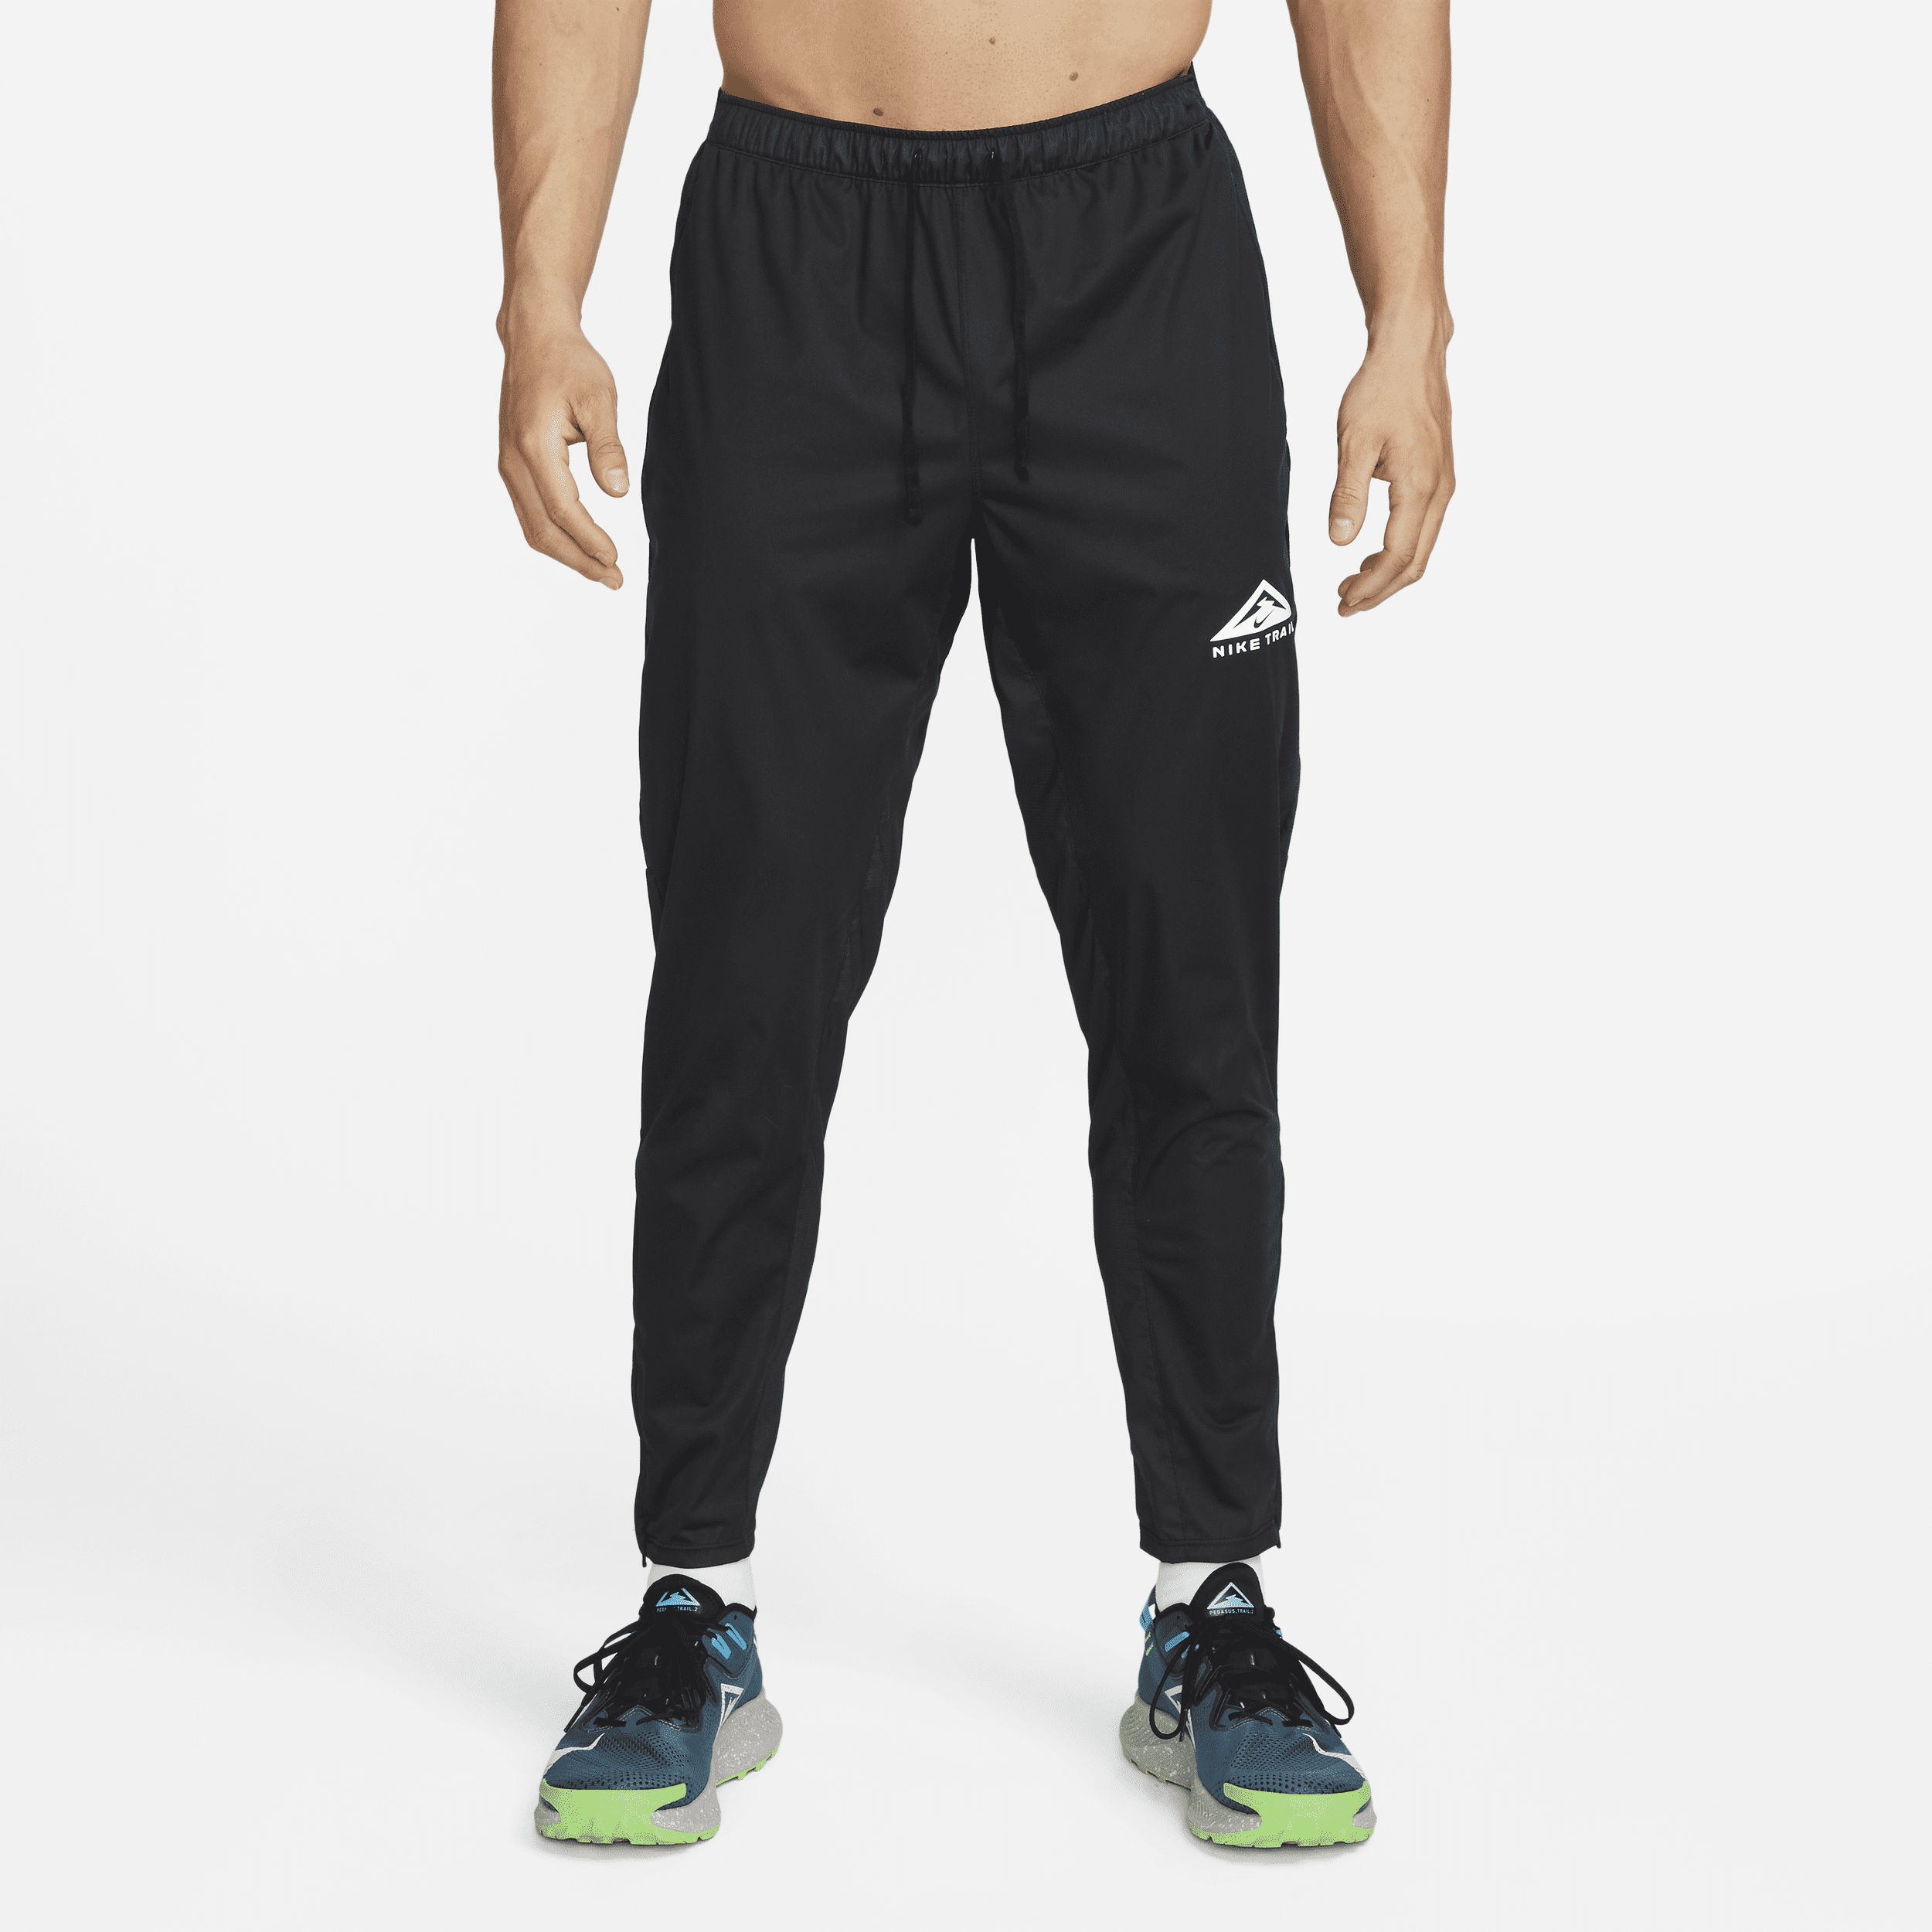 Ανδρικό πλεκτό παντελόνι για τρέξιμο σε ανώμαλο δρόμο Nike Dri-FIT Phenom Elite - Μαύρο